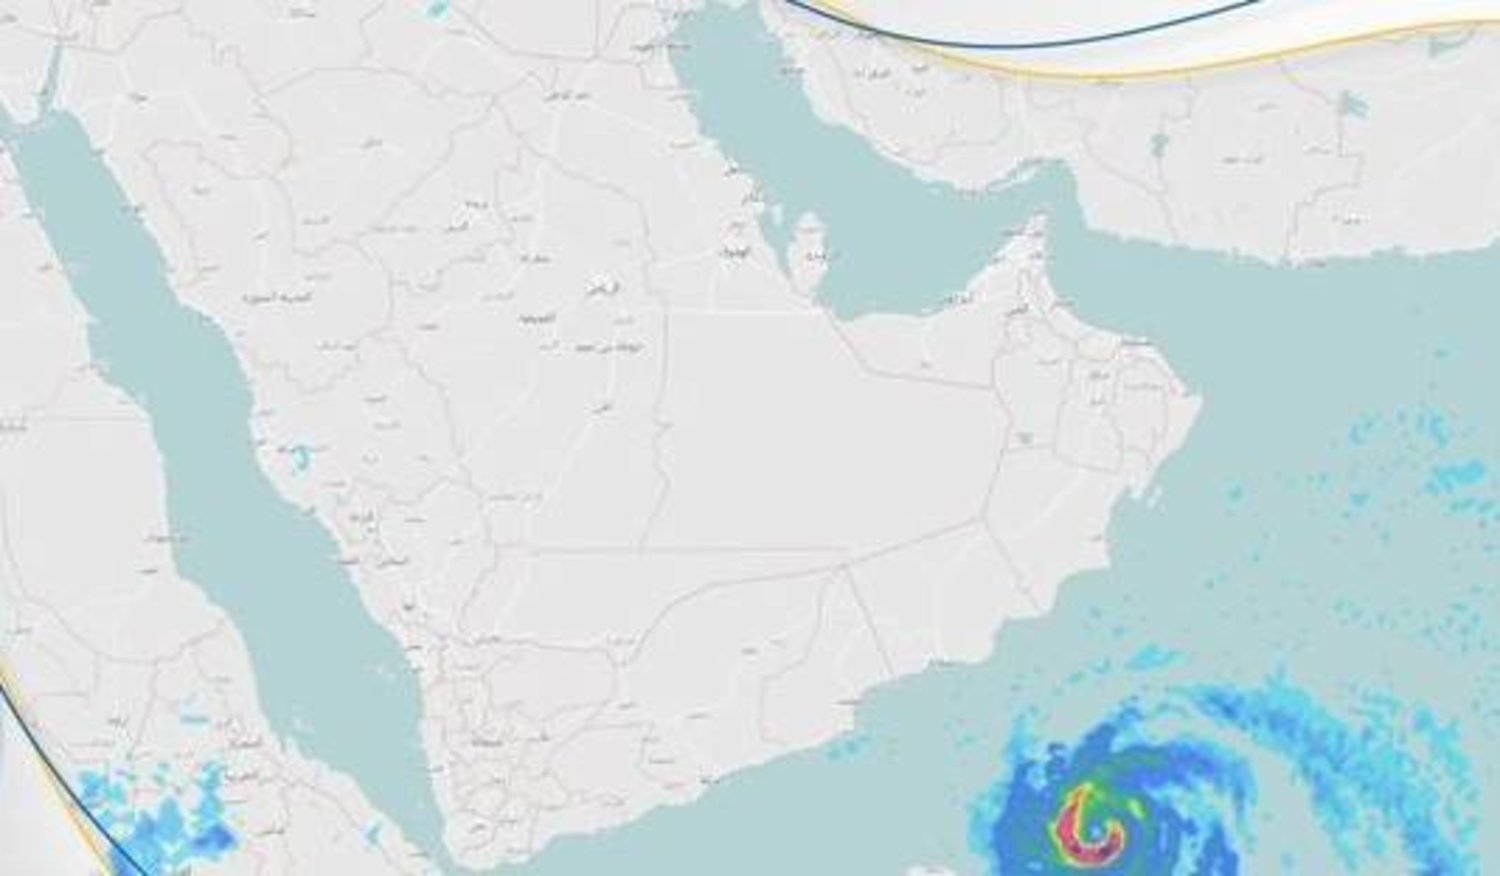 خريطة نشرها «المركز السعودي للأرصاد» توضح المكان المحتمل لتشكل الحالة المدارية في بحر العرب